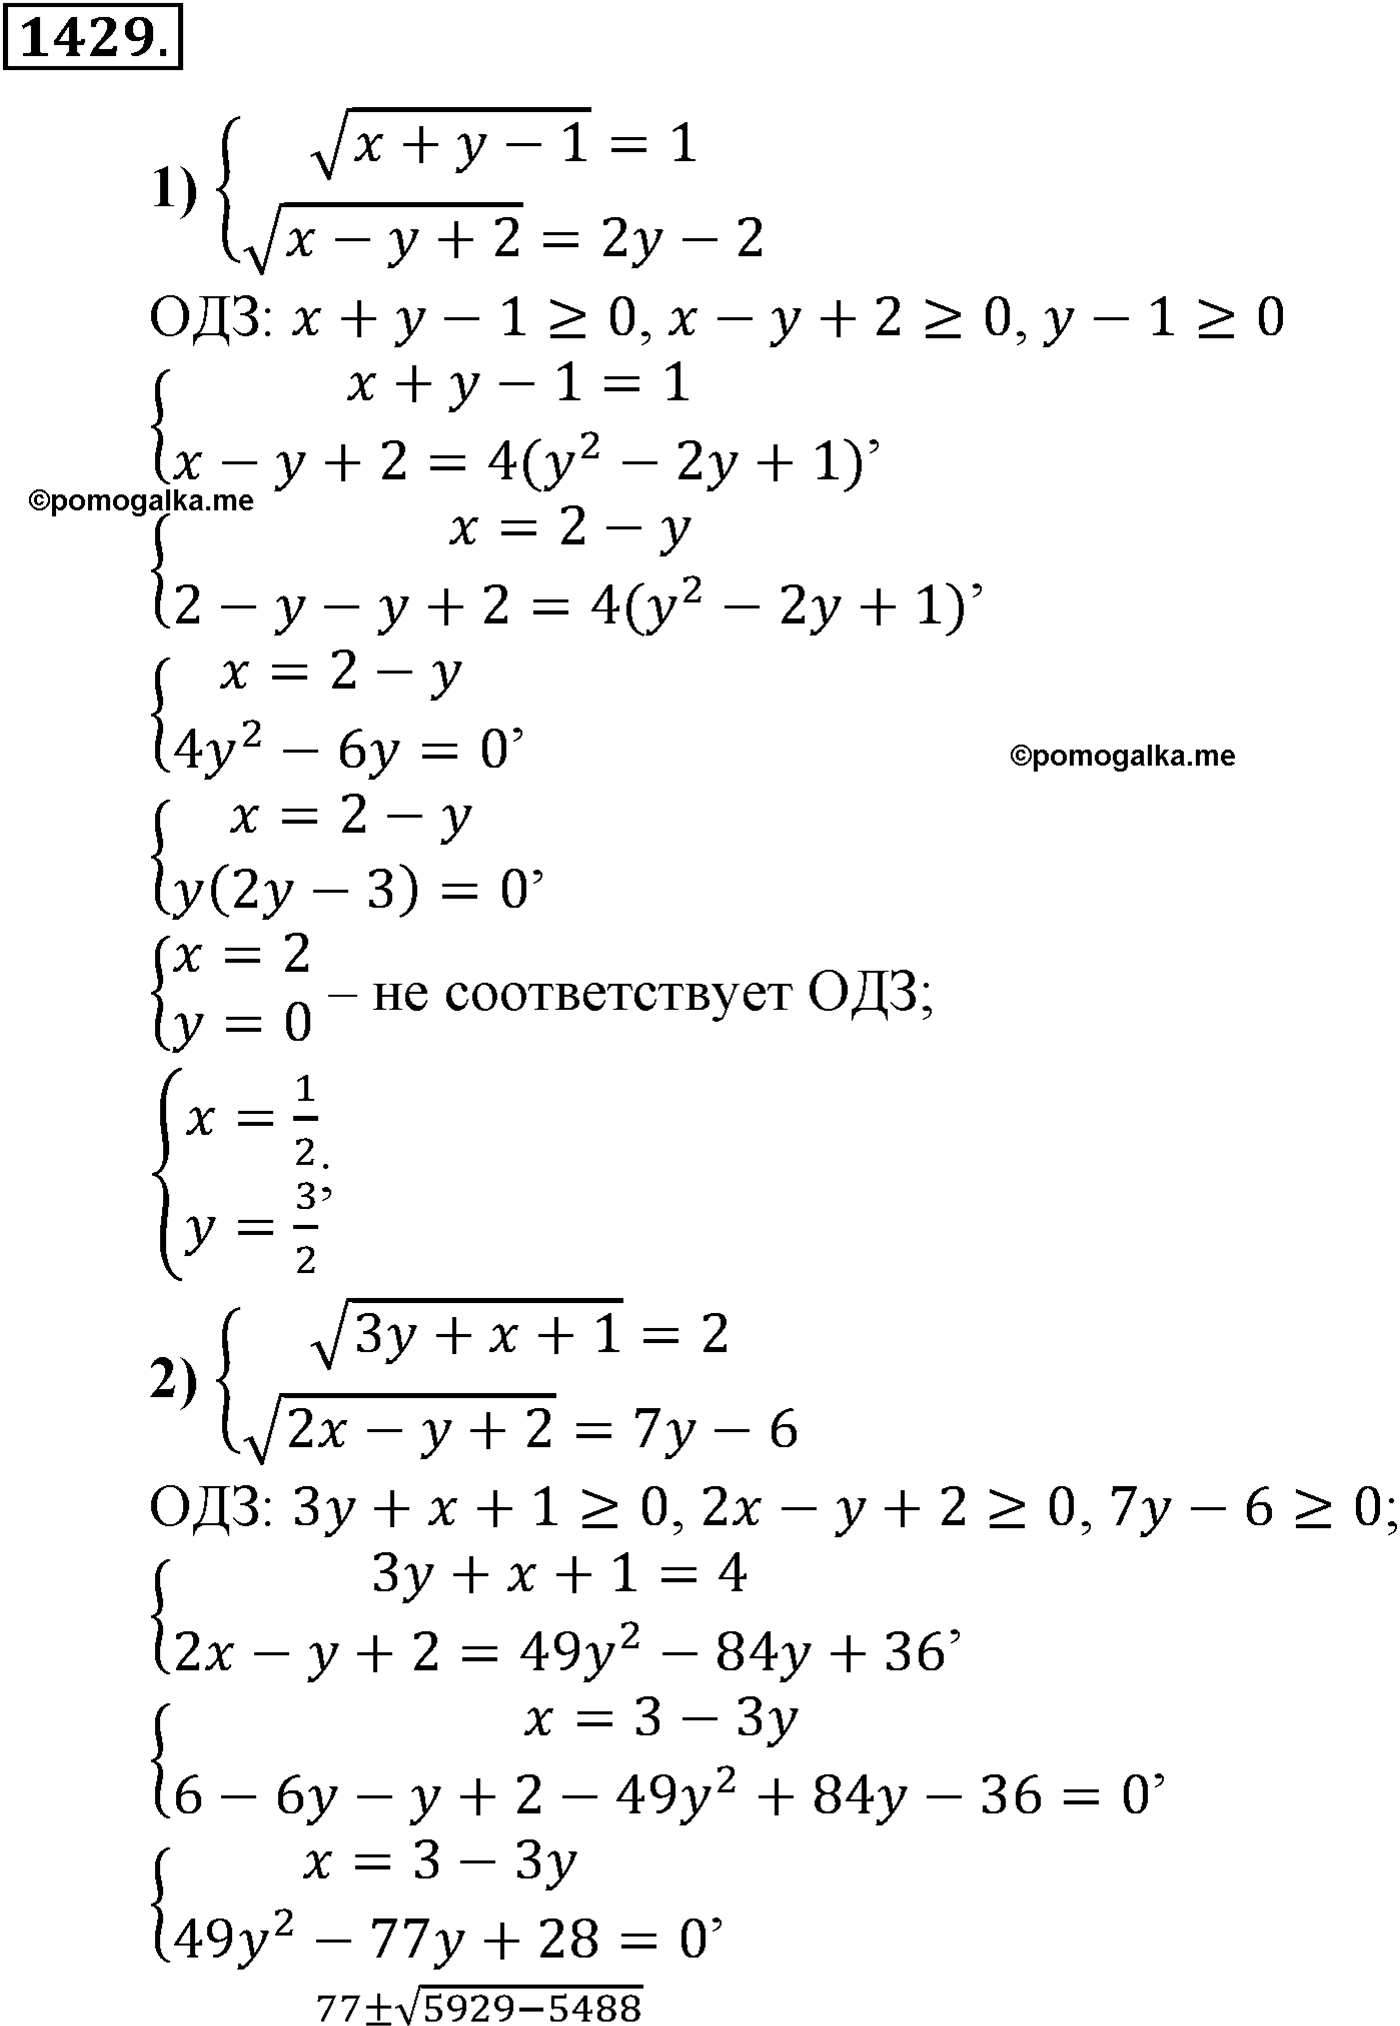 разбор задачи №1429 по алгебре за 10-11 класс из учебника Алимова, Колягина